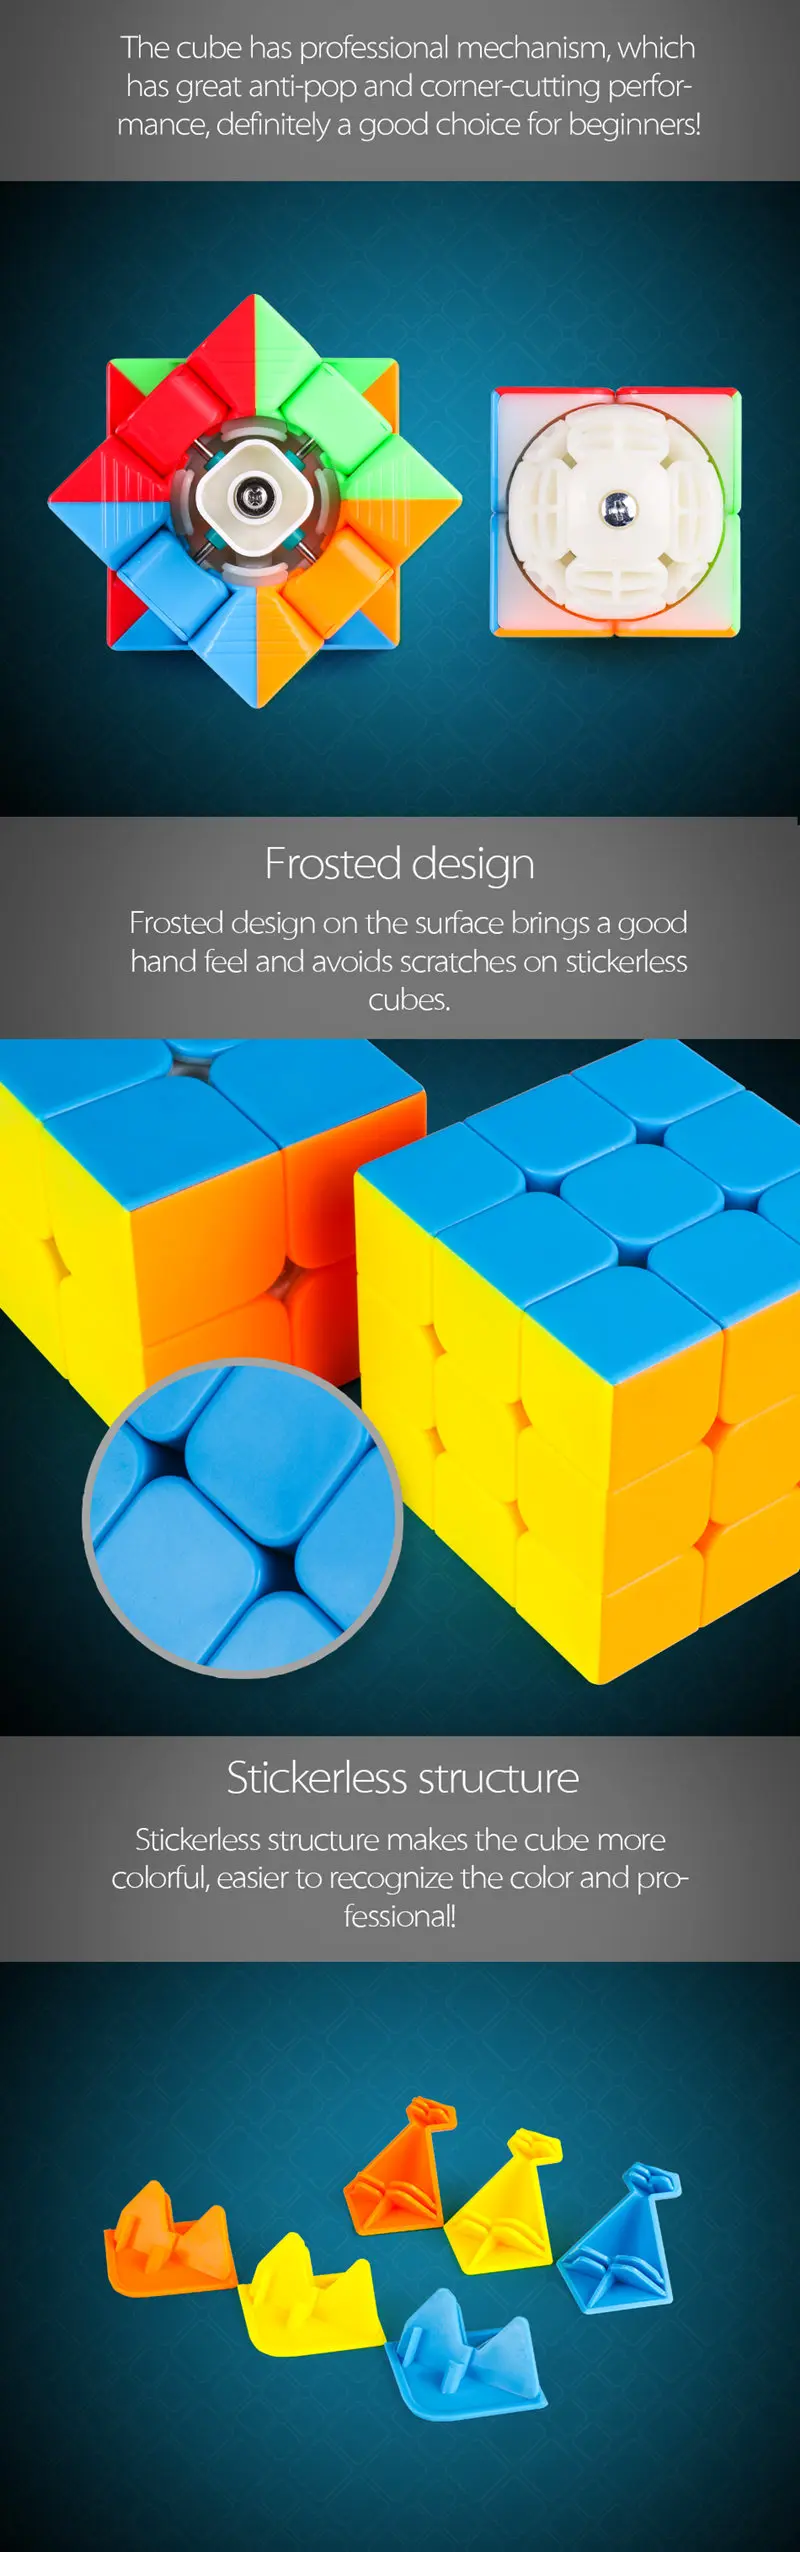 Moyu 2x2x2 куб+ 3x3x3 куб набор, черный, без наклеек, цветной скоростной куб, игрушки для мальчиков, волшебный куб, развивающие пазлы, игрушки